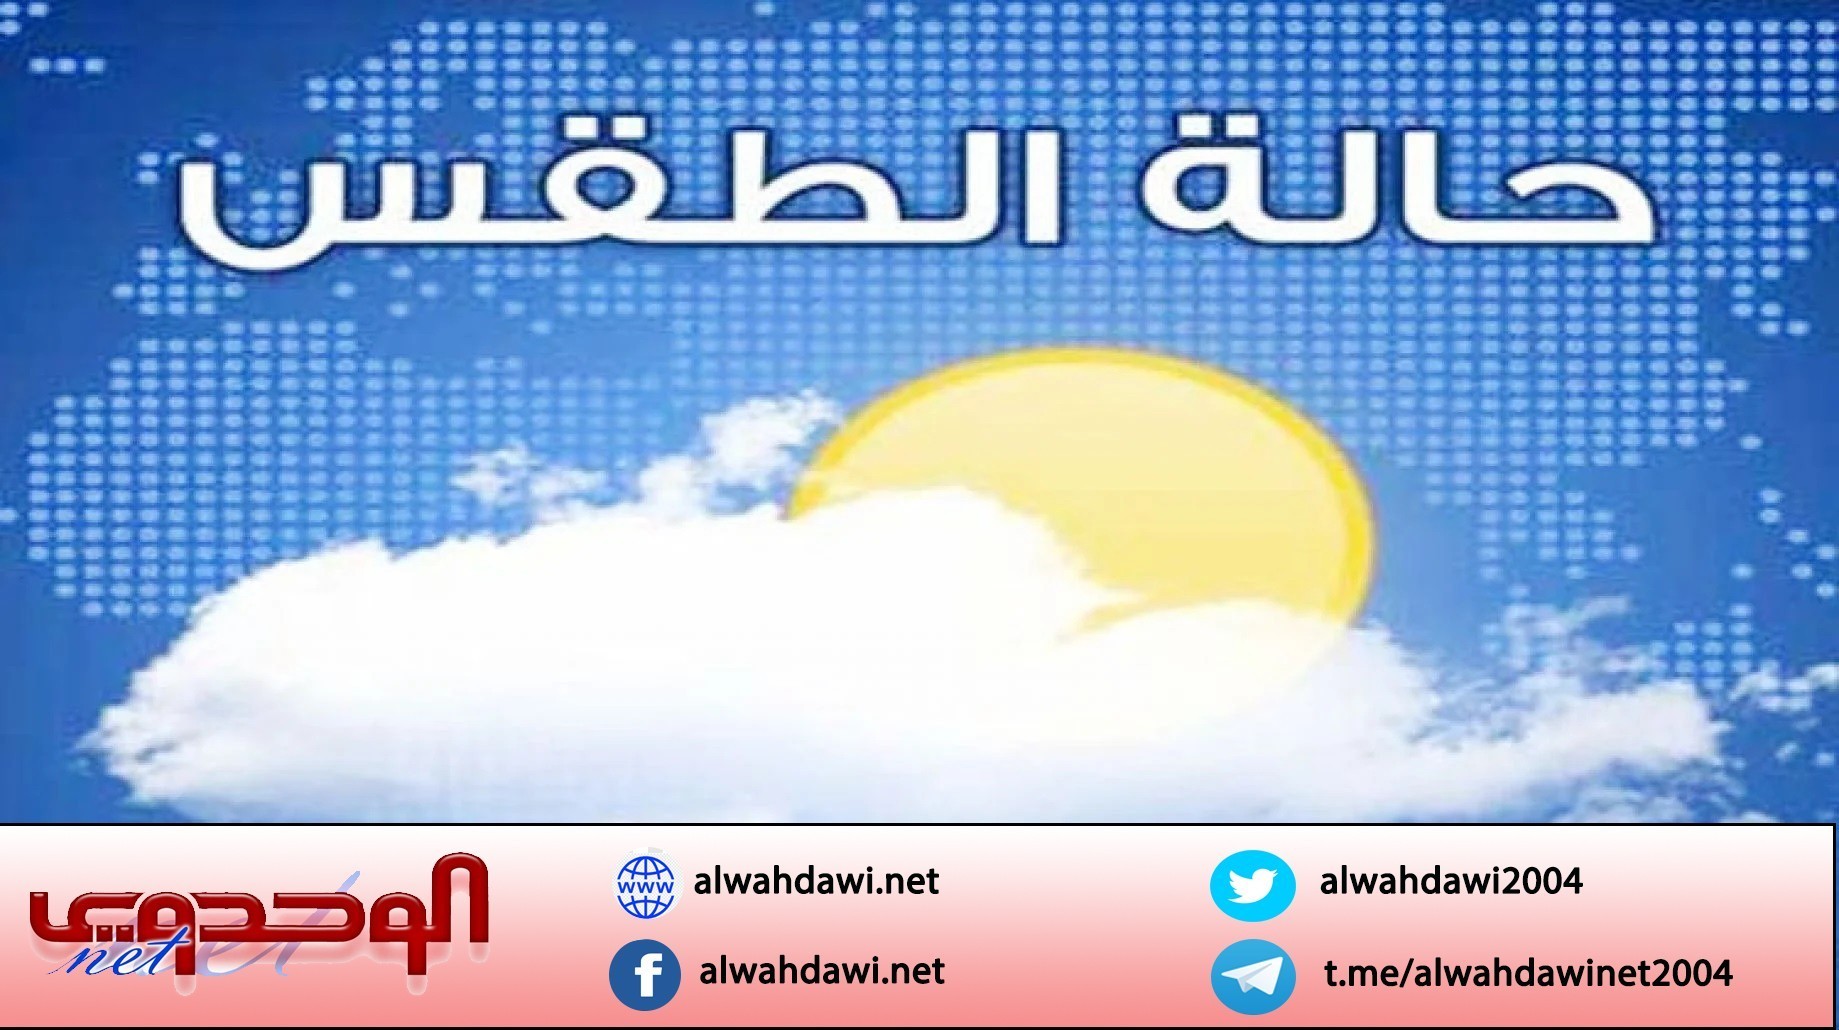 الأرصاد يتوقع هطول أمطار على صنعاء و 12 محافظة أخرى خلال الساعات القادمة